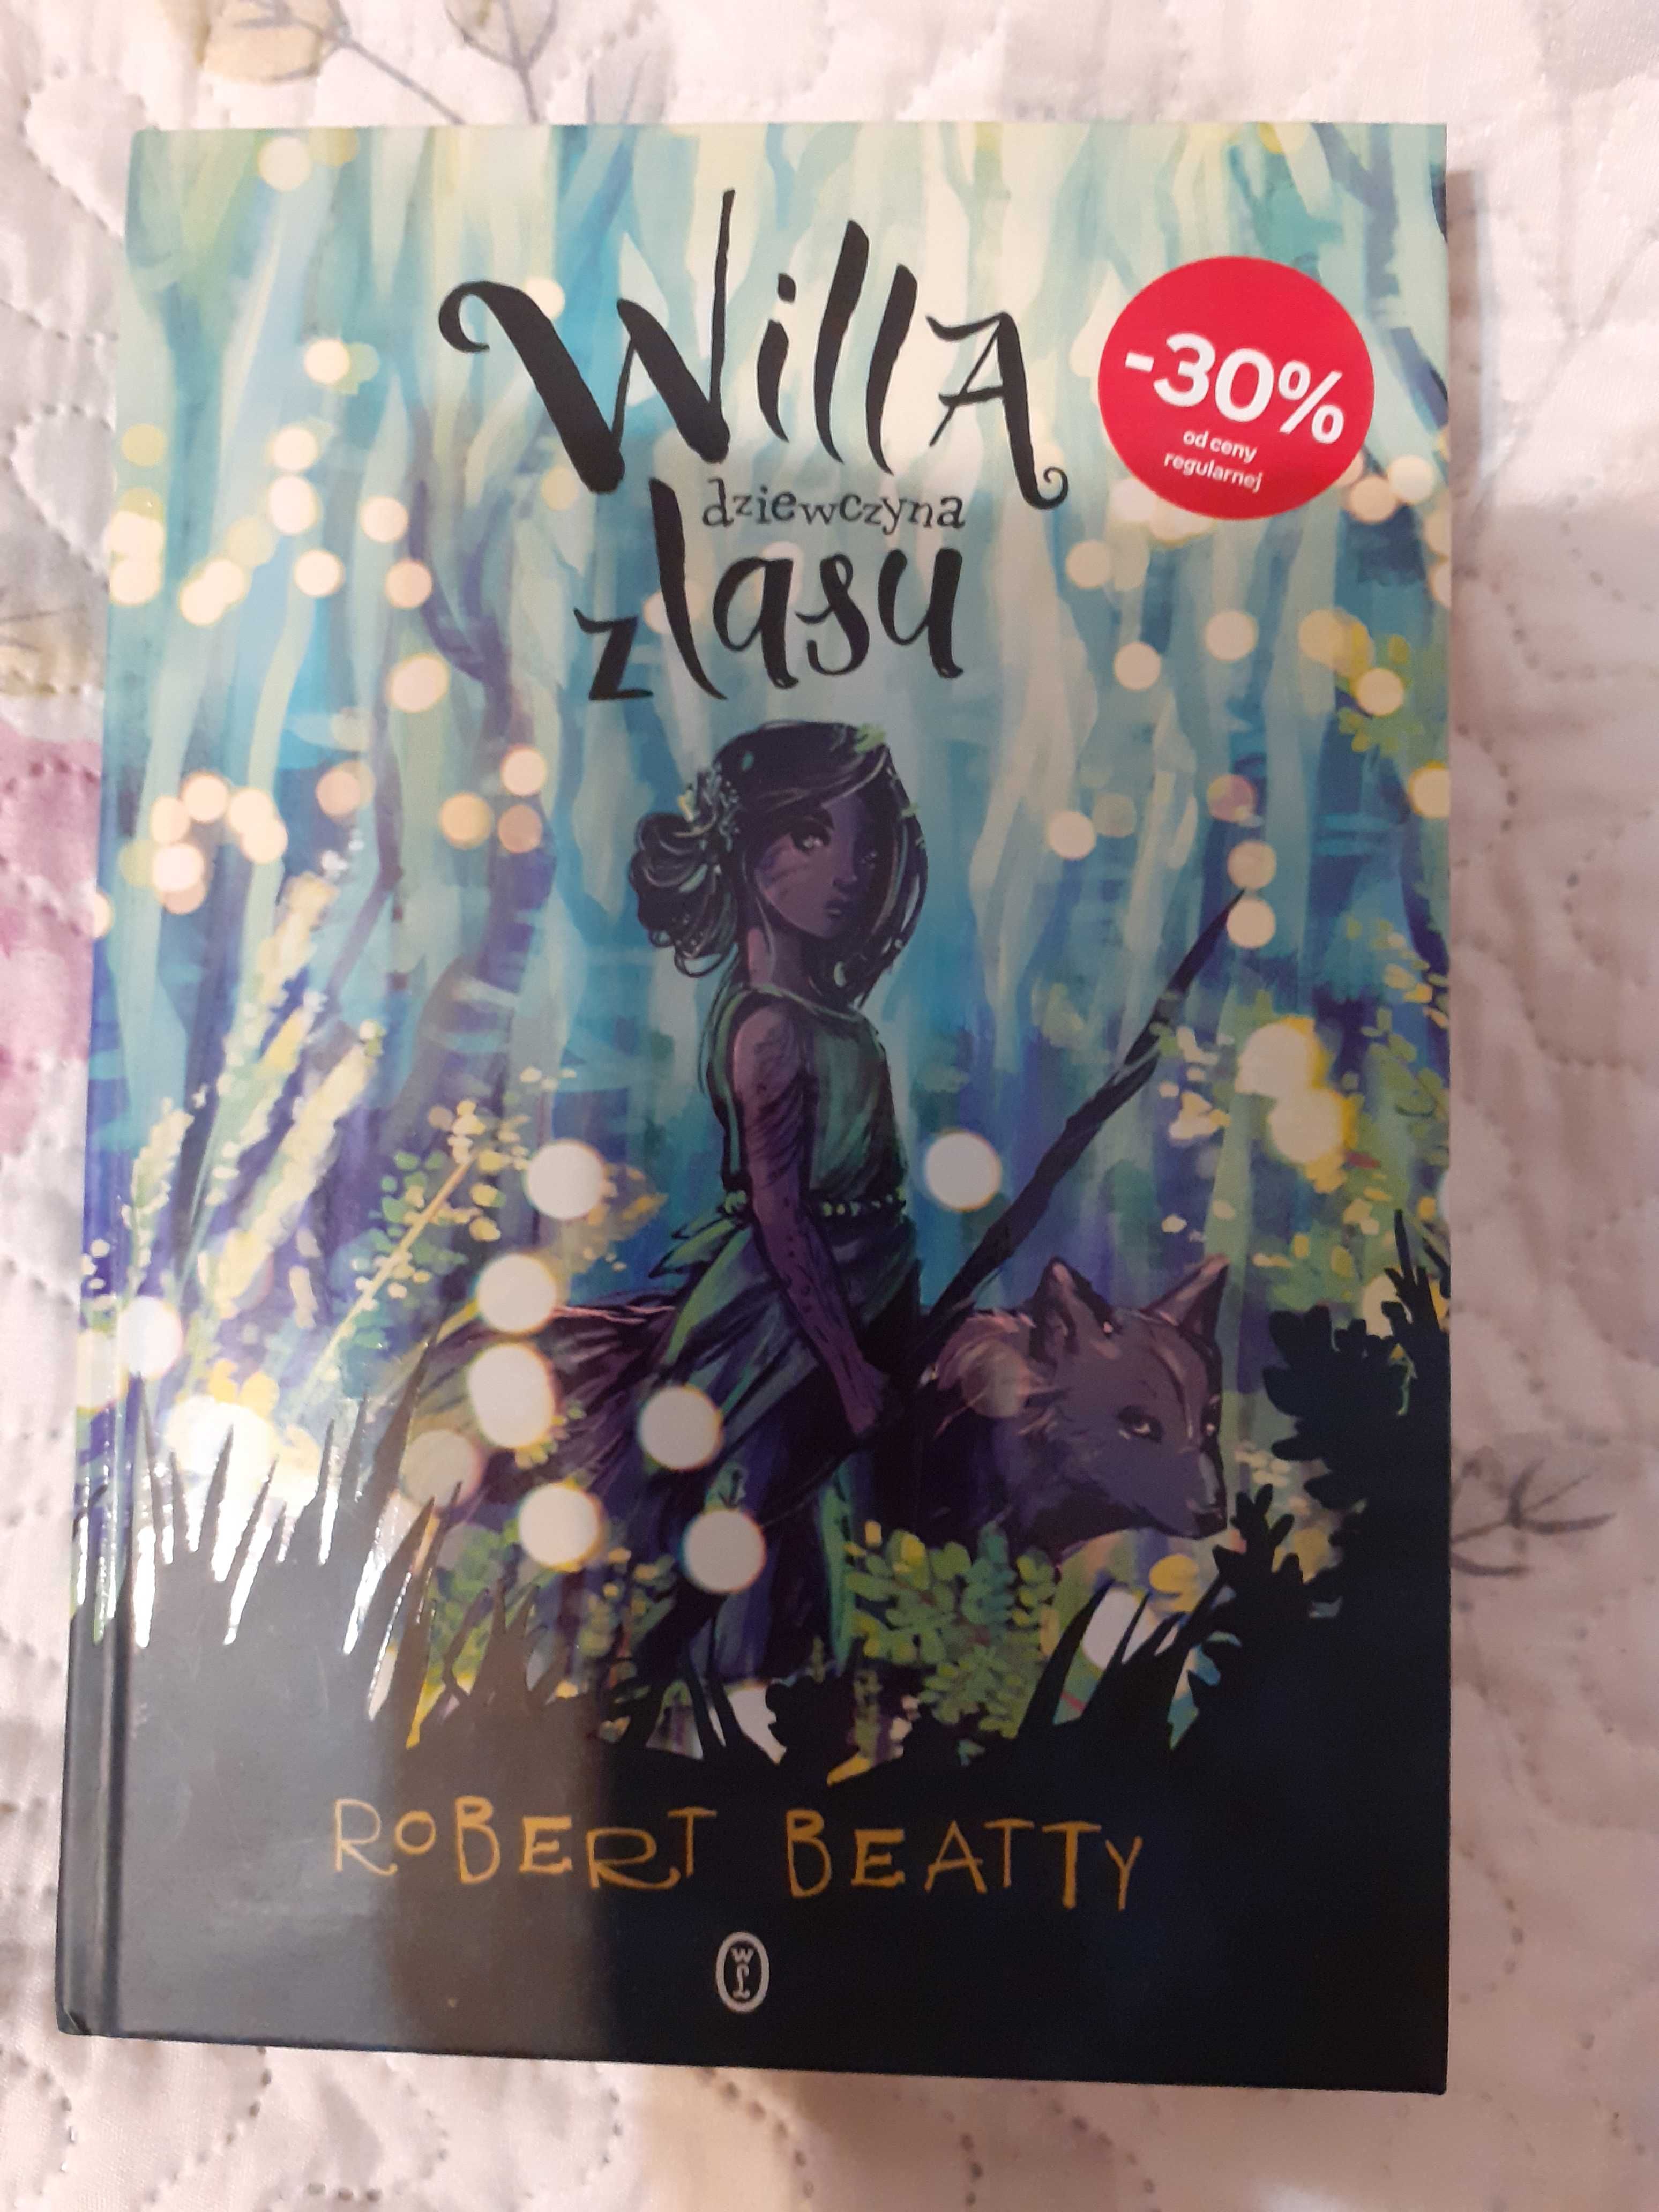 Willa dziewczyna z lasu Robert Beatty